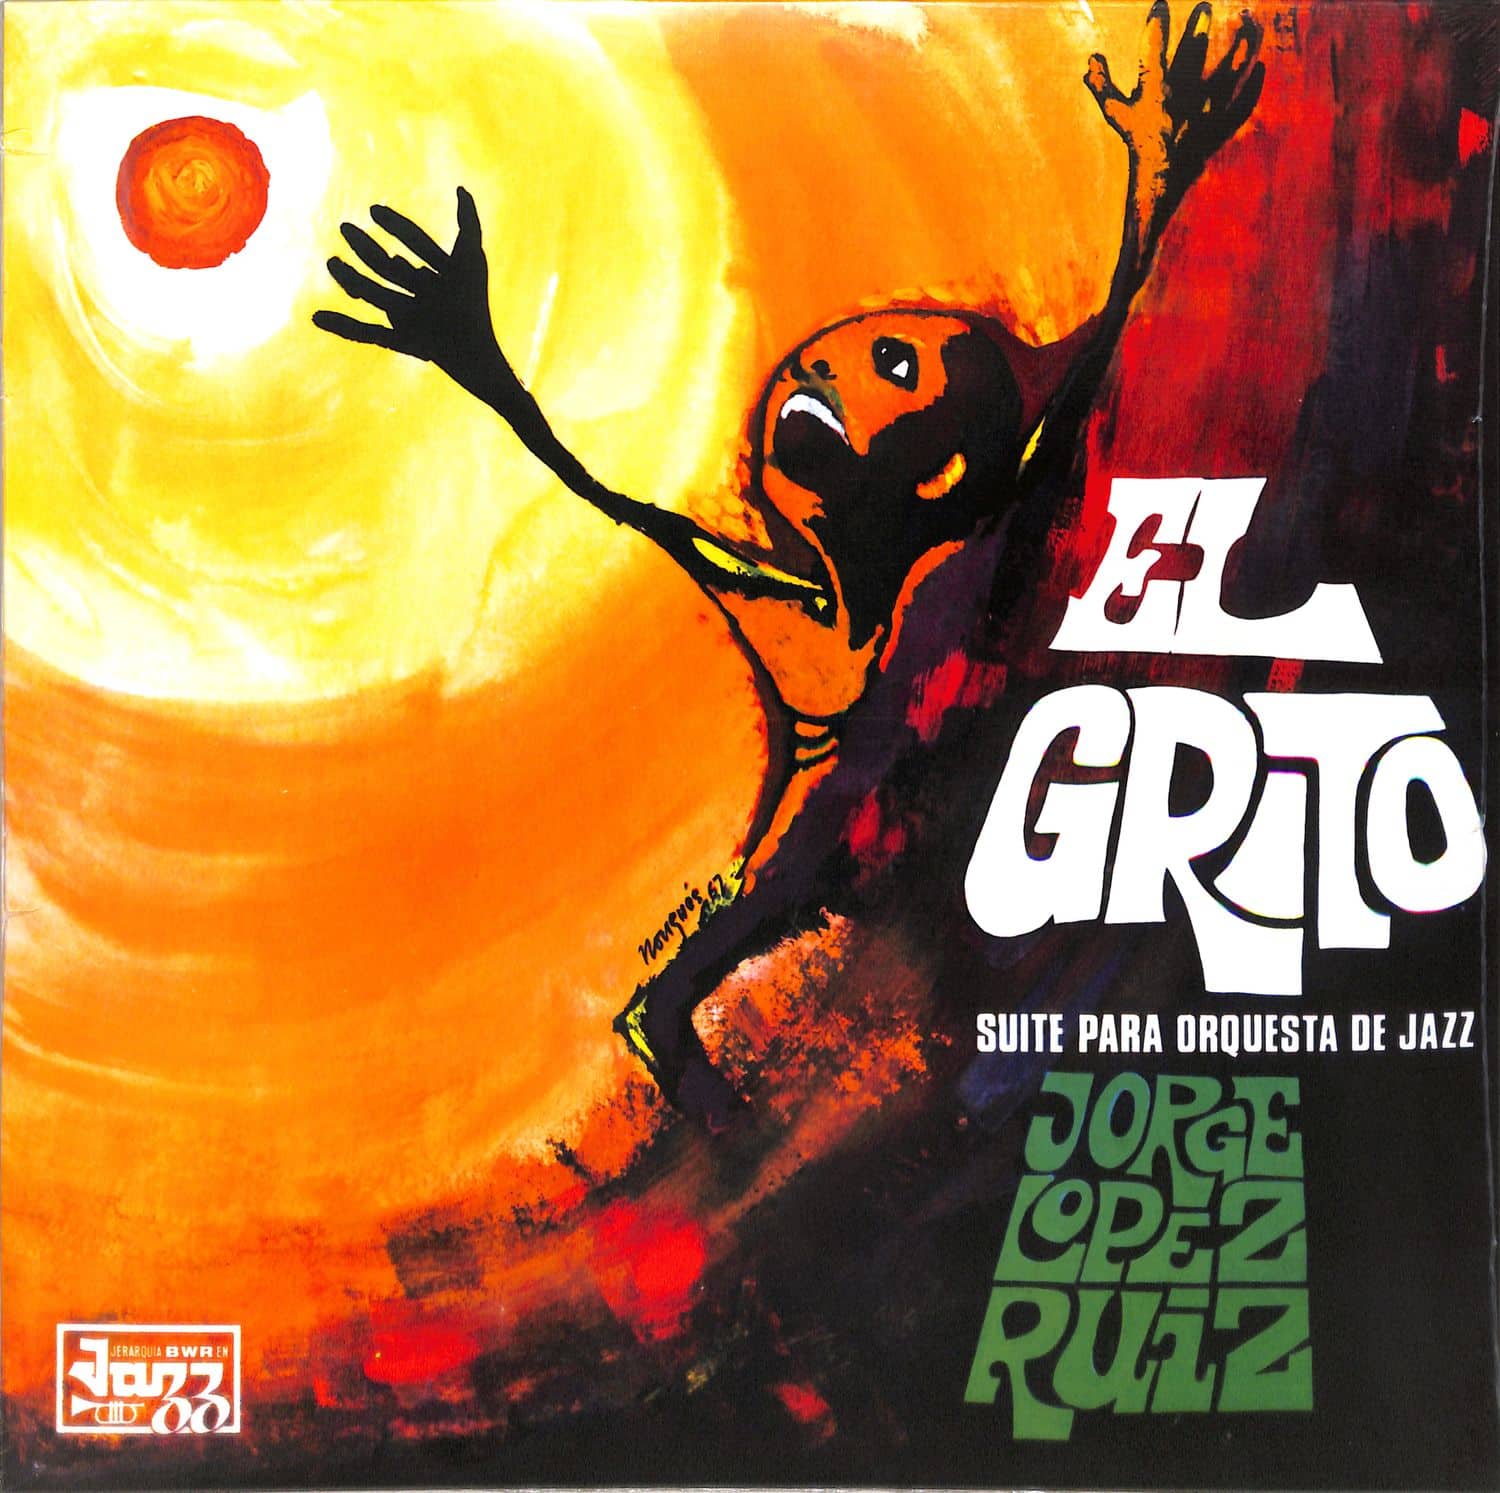 Jorge Lpez Ruiz - EL GRITO 